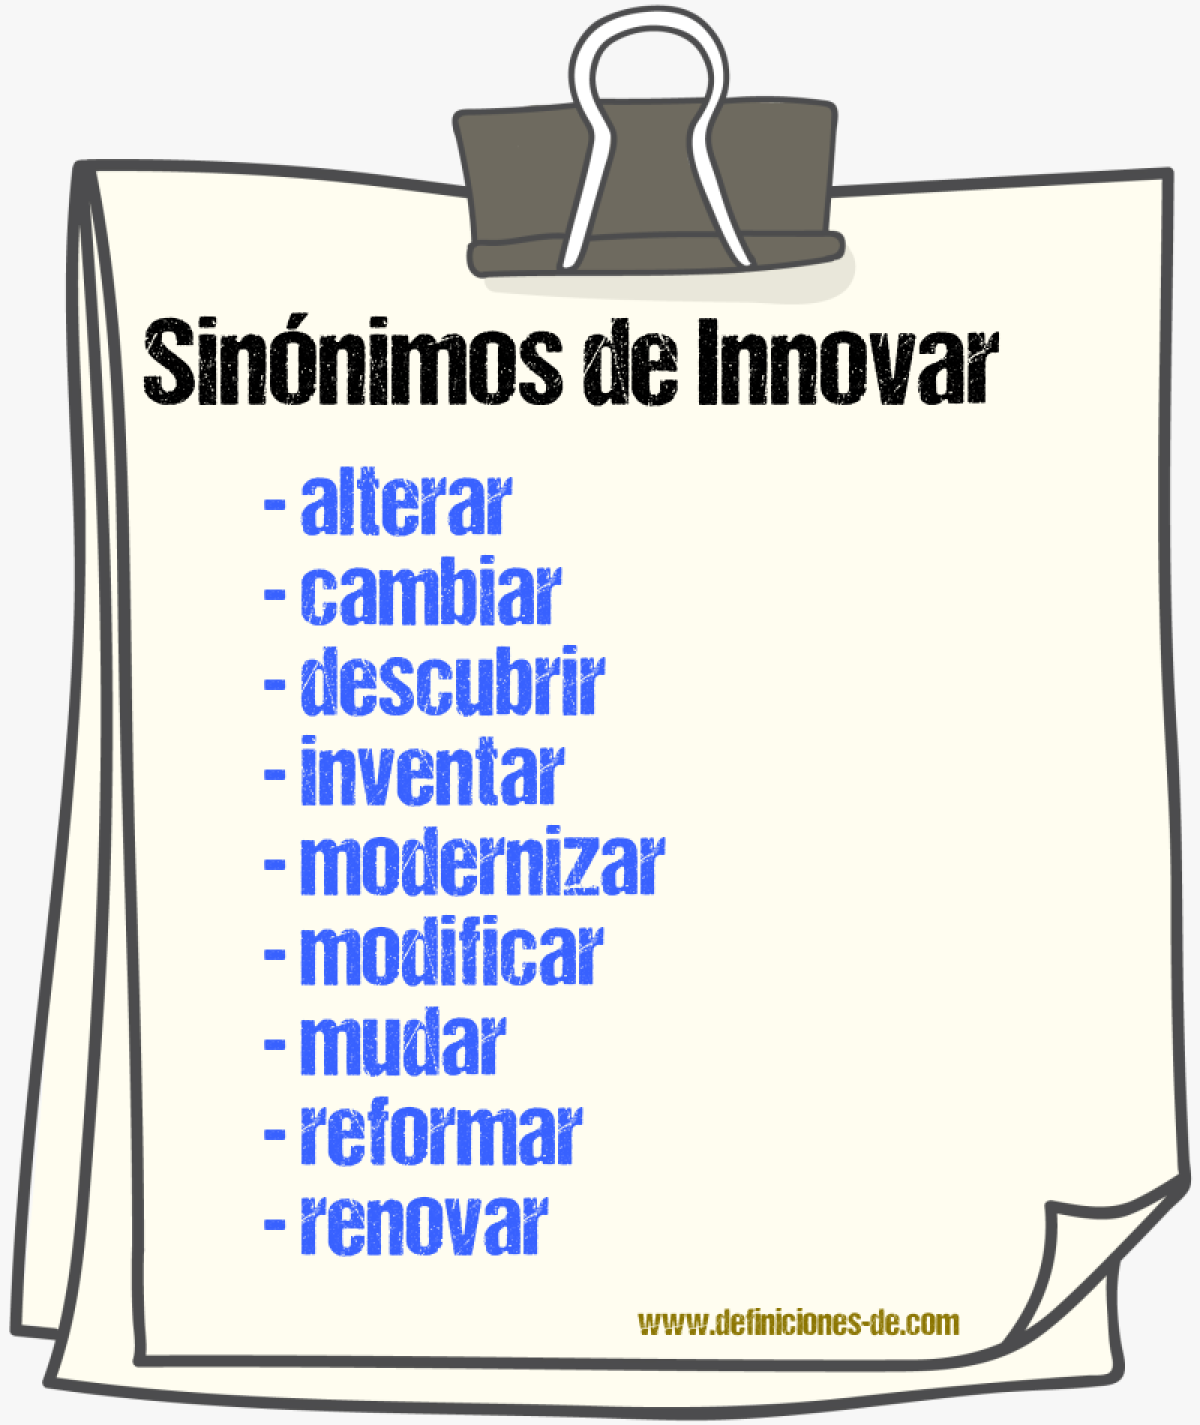 Sinónimos de innovar